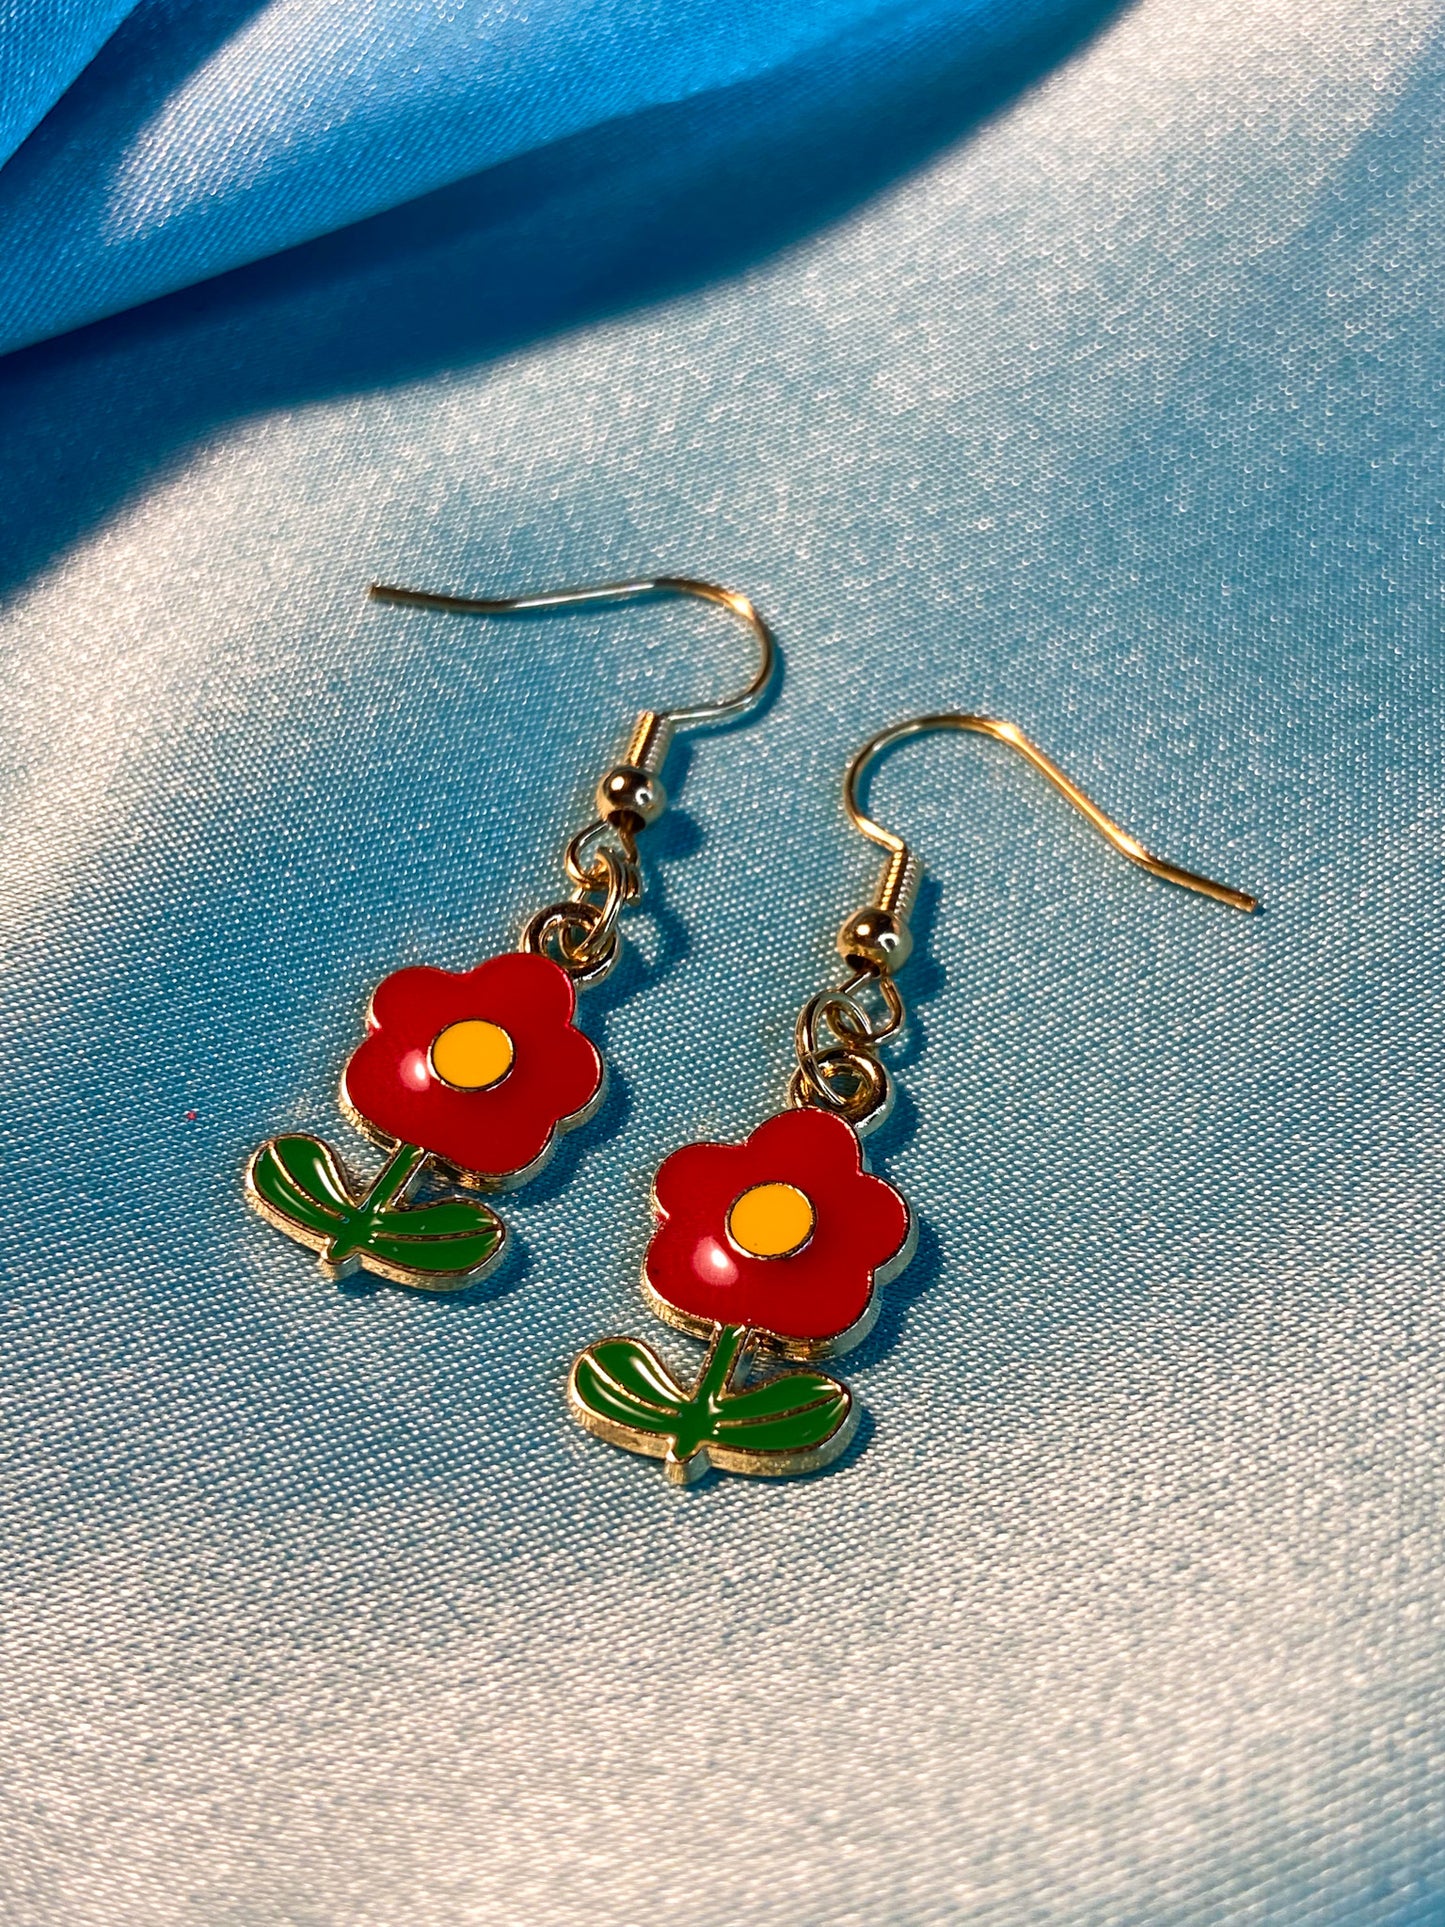 Handmade Red Poppy Earrings | Gift for flower lovers | gift for gardeners